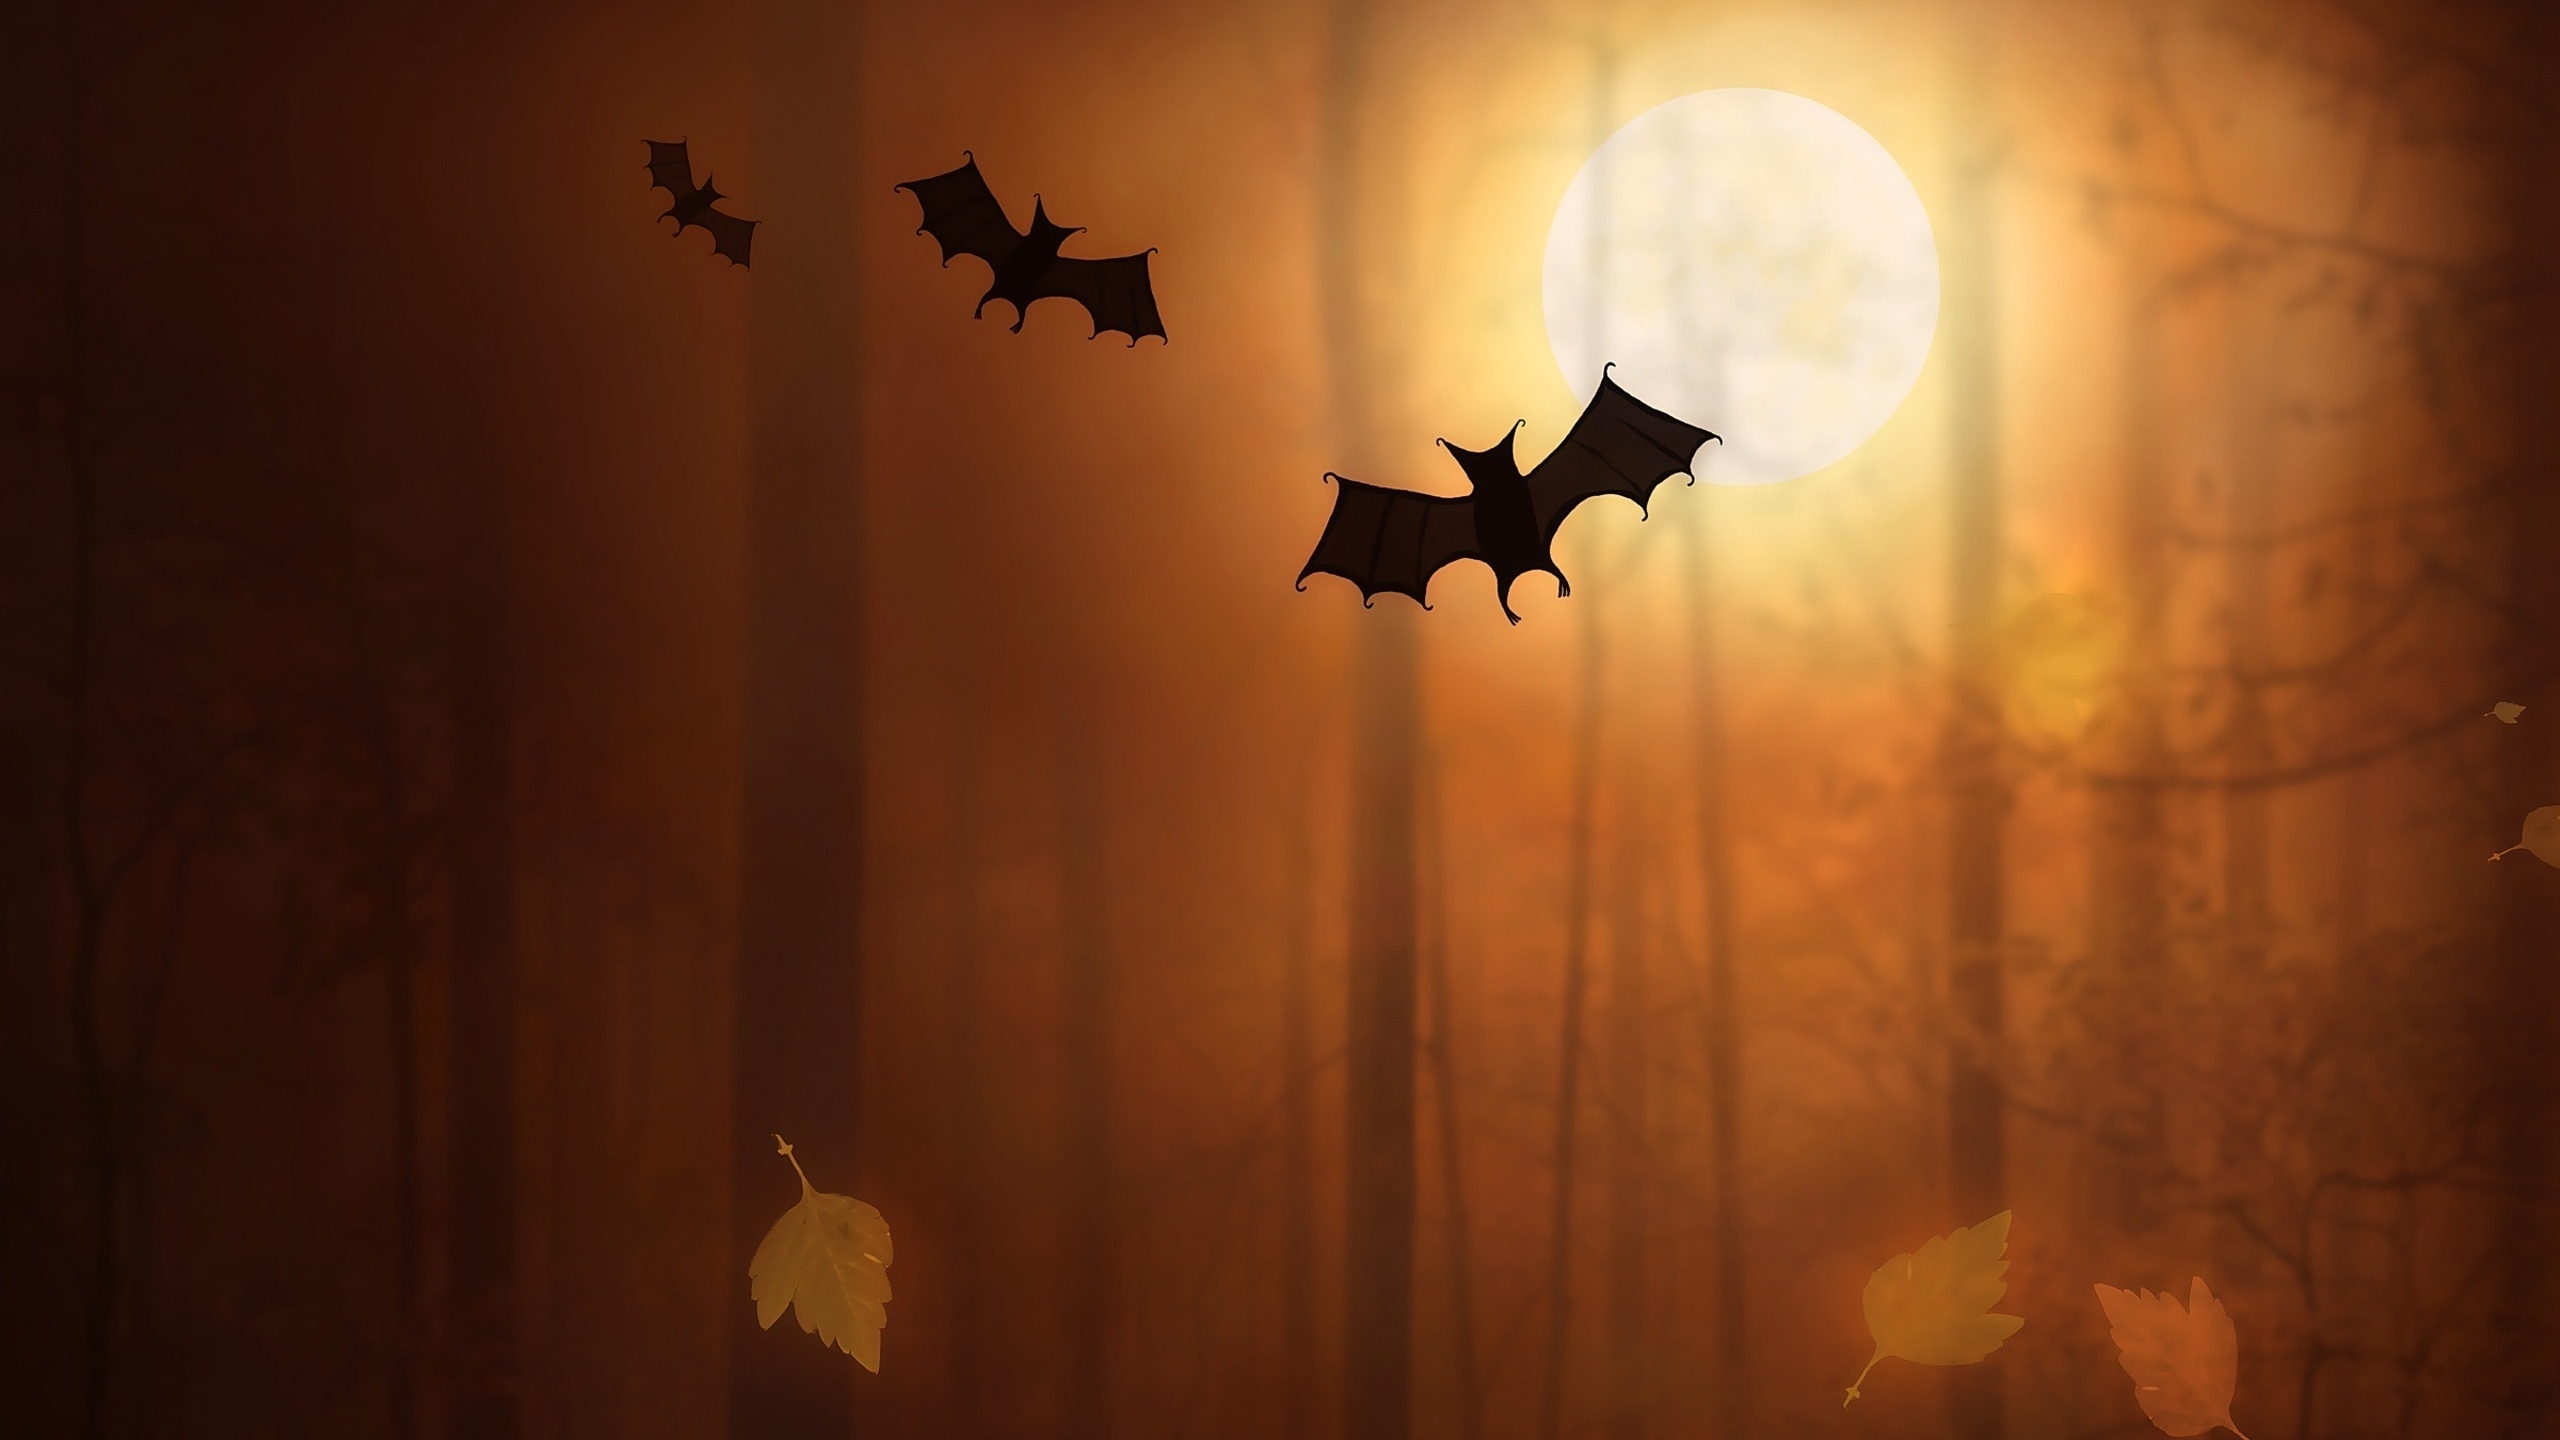 General 2560x1440 night Moon trees fallen leaves bats digital art silhouette